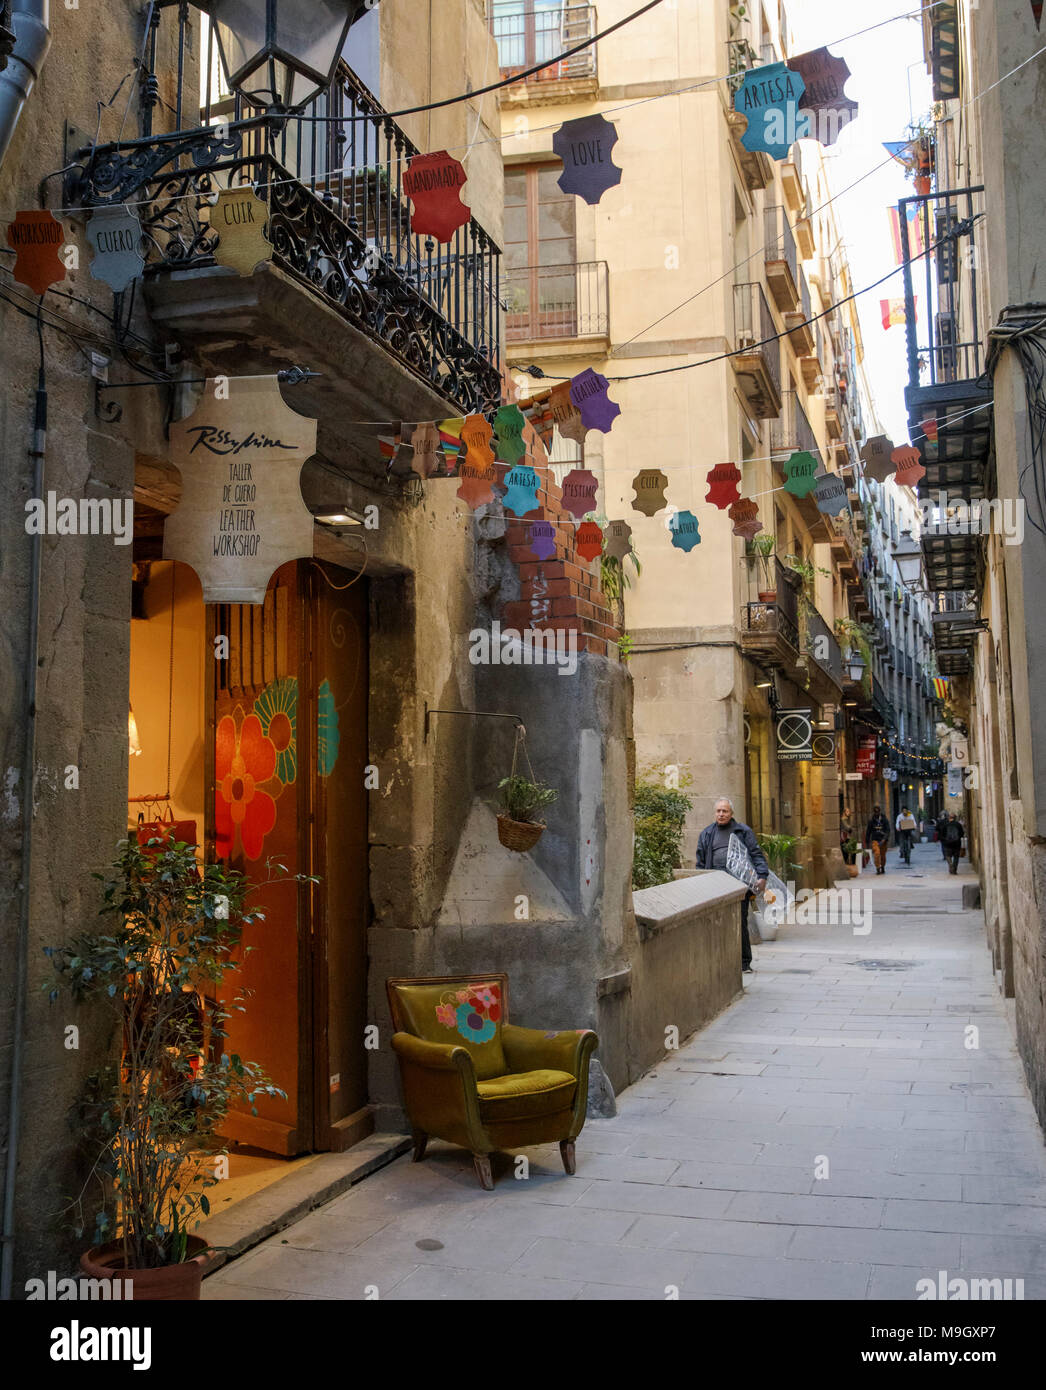 Les étroites rues piétonnes d'El Born de Barcelone, Espagne, abritent des boutiques indépendantes, des bars et boutiques de créateurs. Banque D'Images